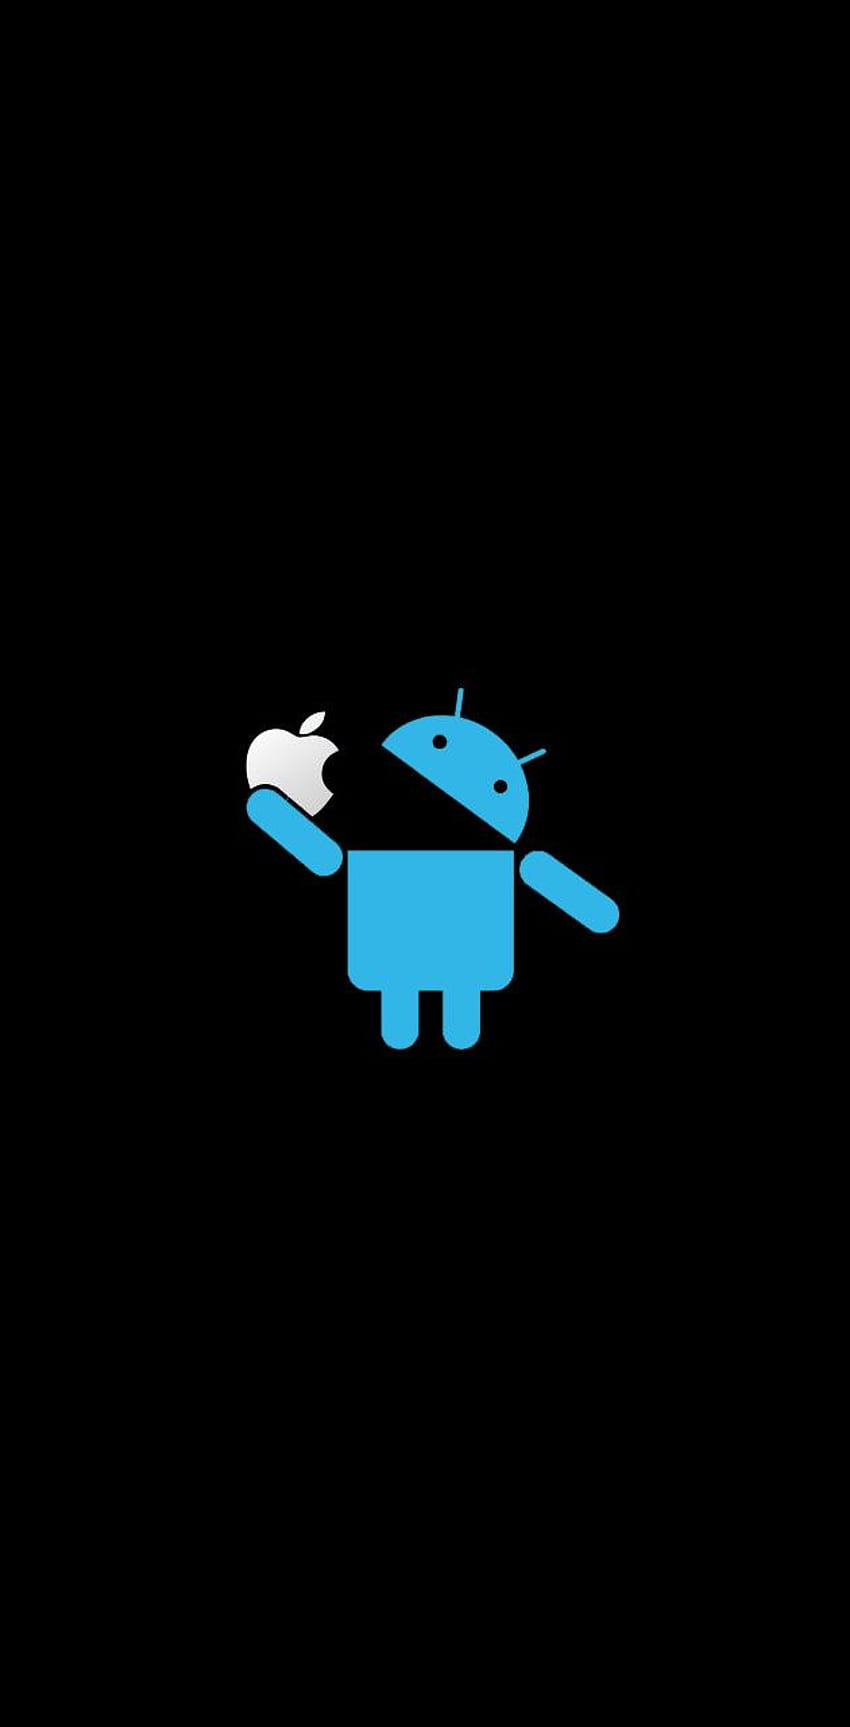 Android come manzana, Apple comiendo Android fondo de pantalla del teléfono